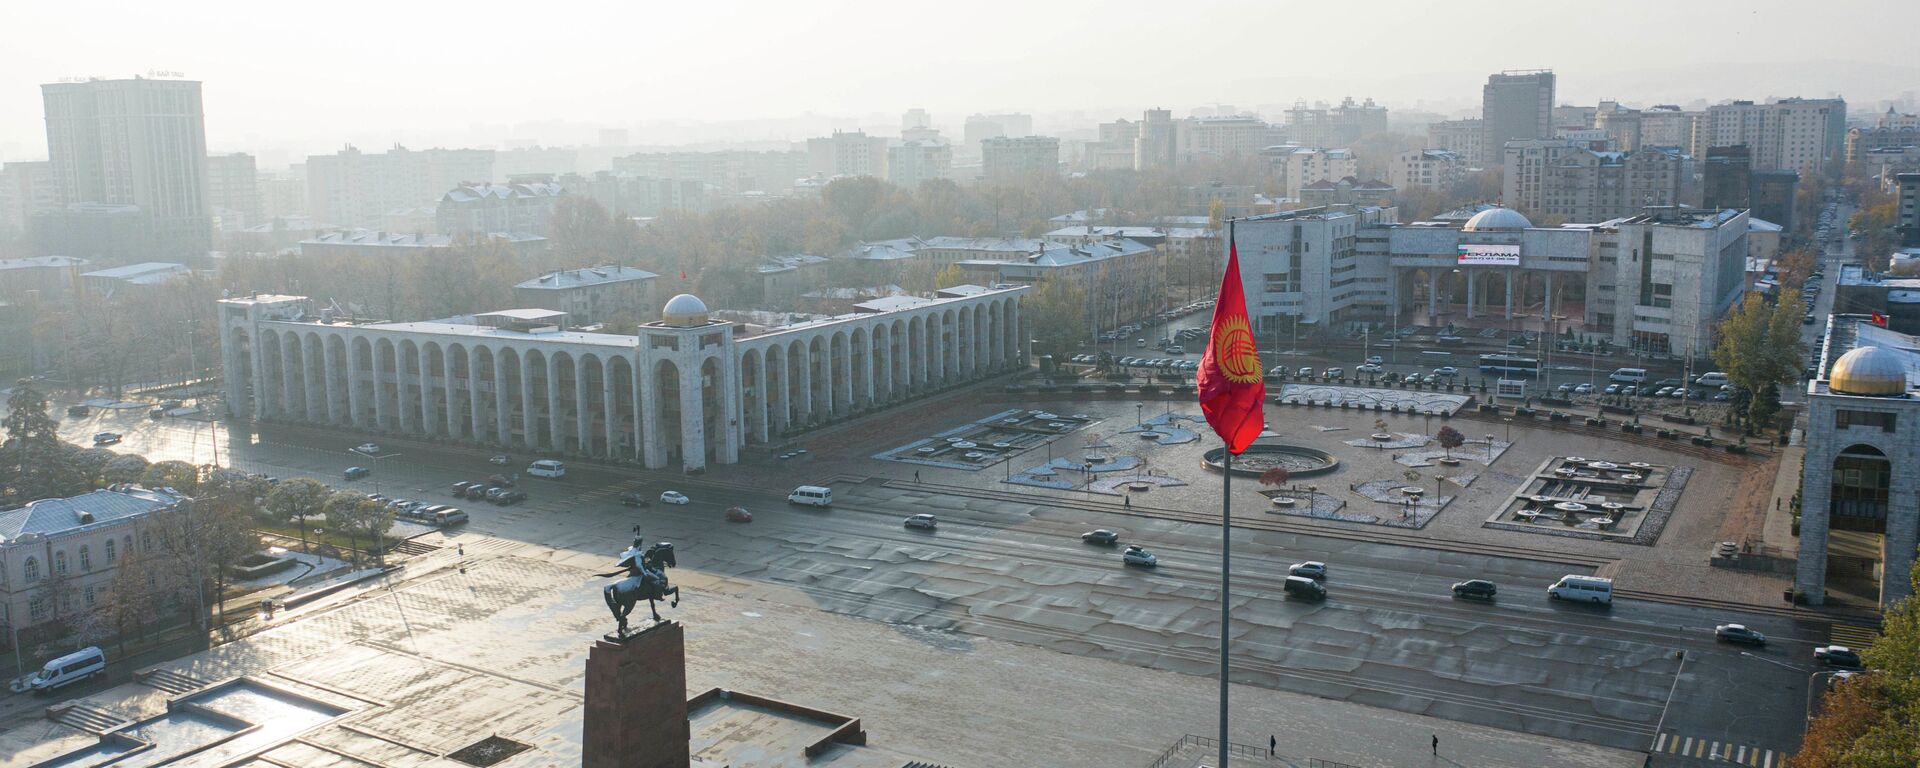 Вид на площадь Ала-Тоо в Бишкеке. Архивное фото - Sputnik Кыргызстан, 1920, 13.02.2021